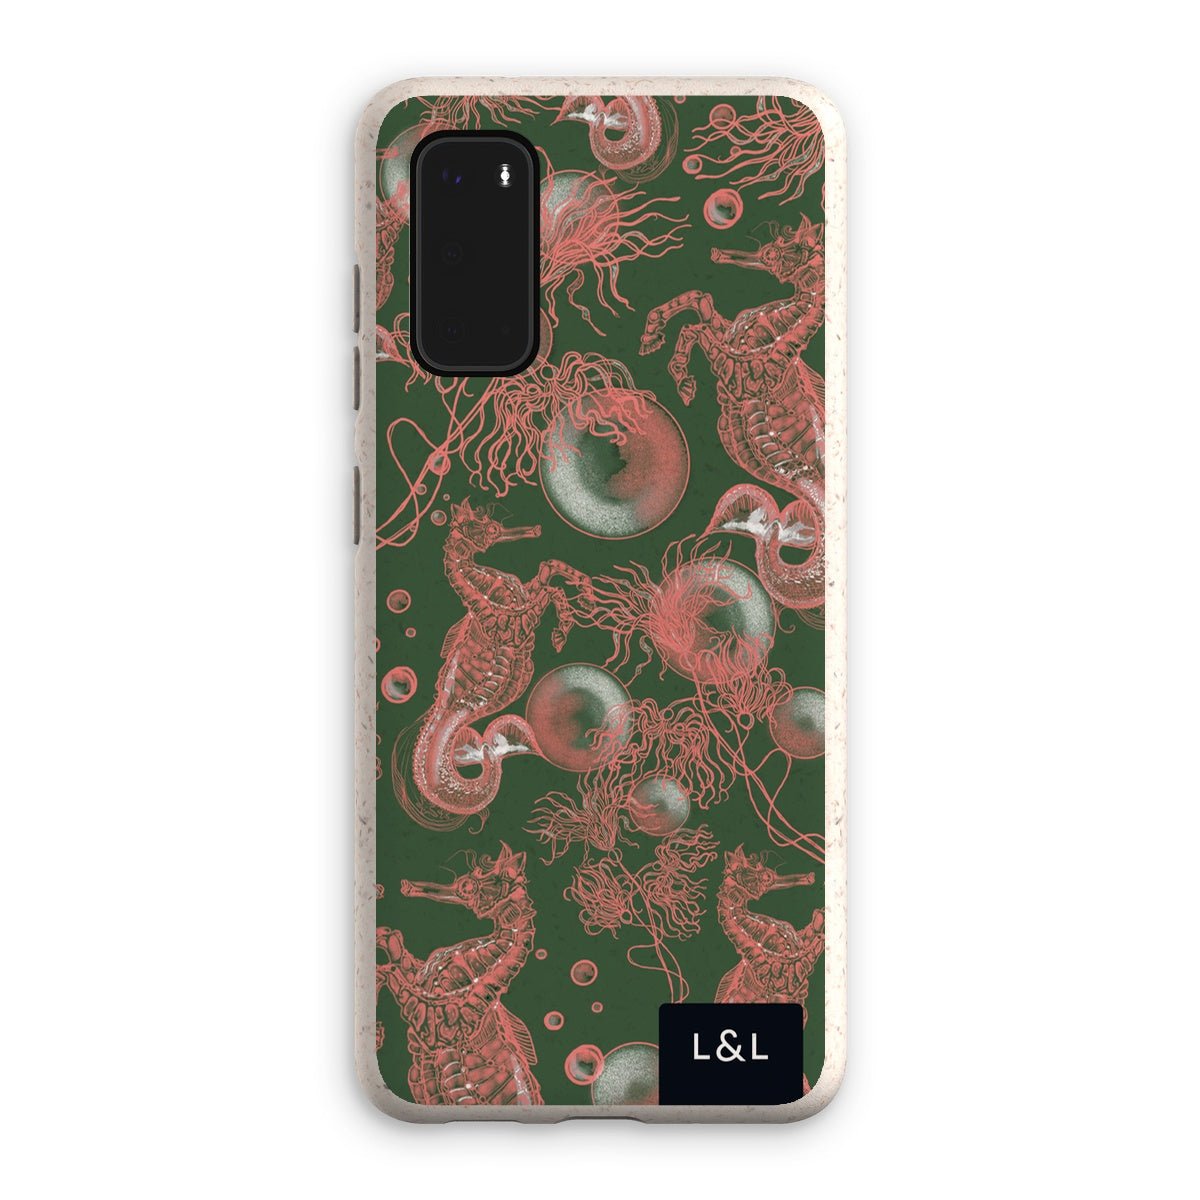 Sea Life Eco Phone Case - Loam & Lore